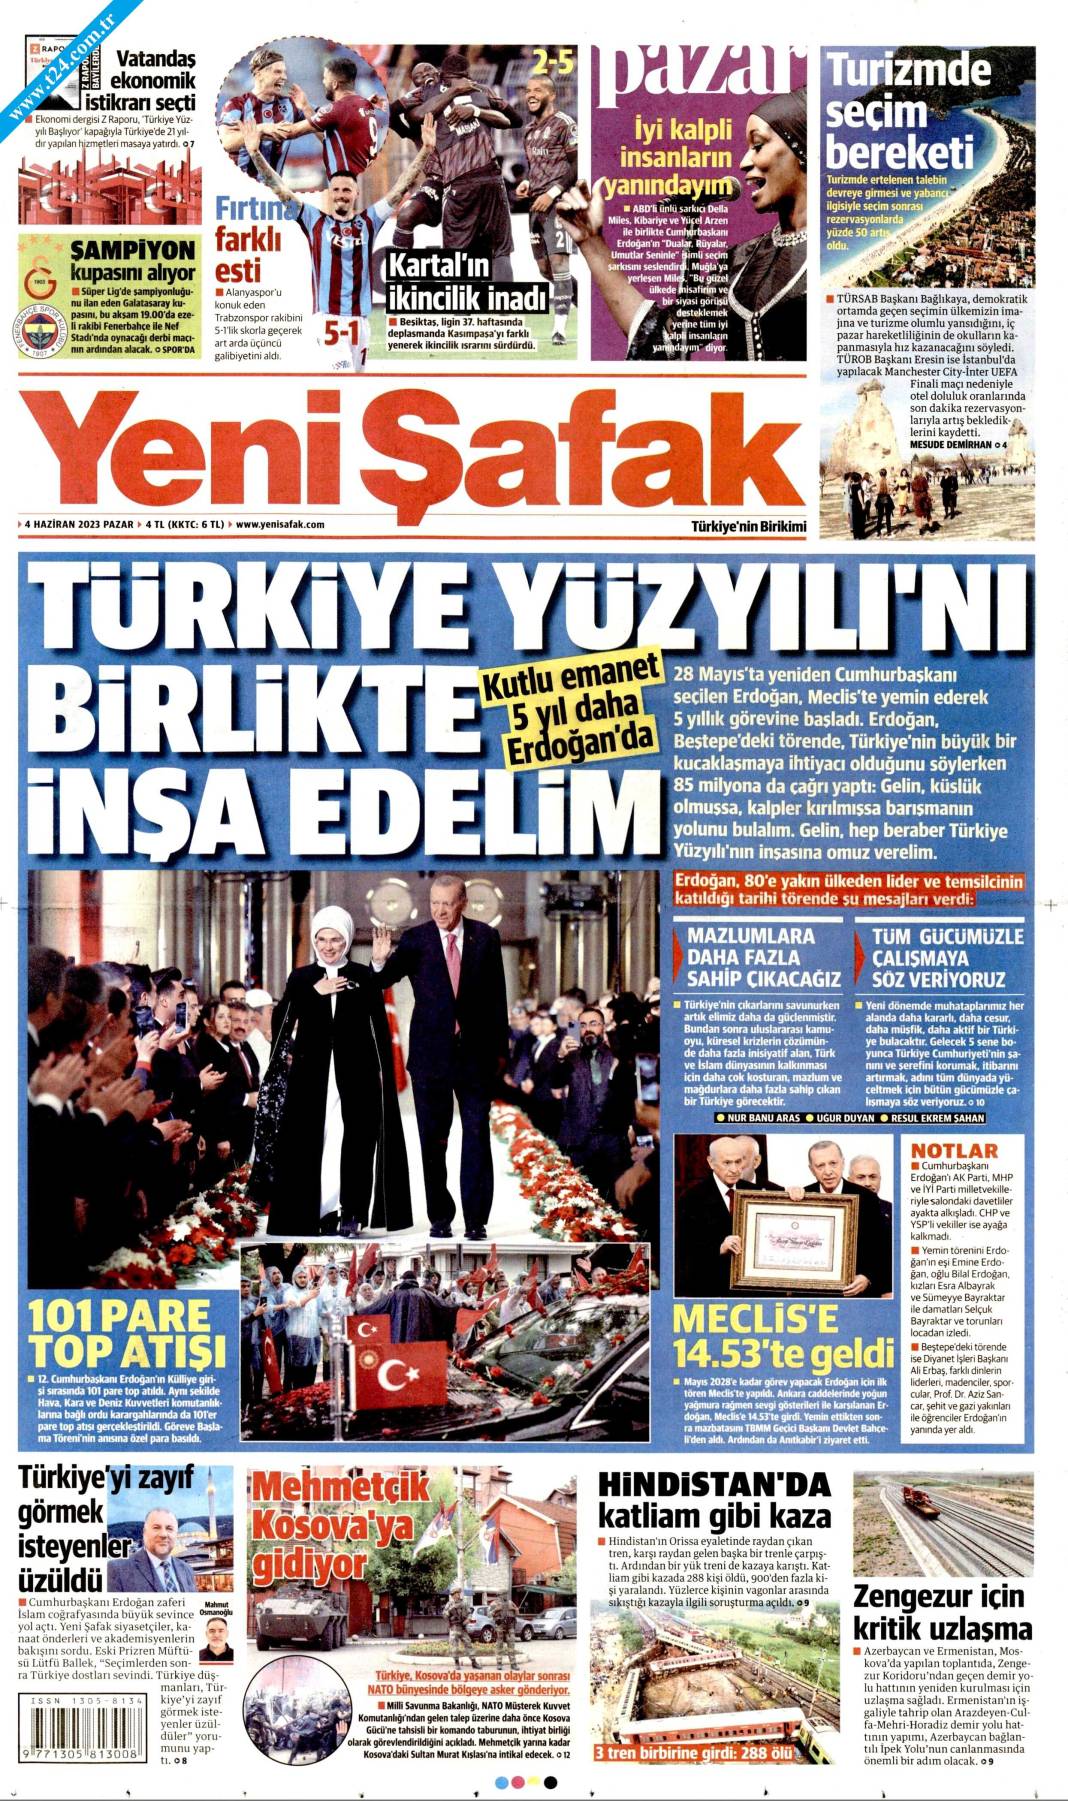 Gazeteler, Erdoğan’ın açıkladığı yeni kabine listesini manşetlerine nasıl taşıdı? İşte günün manşetleri 7